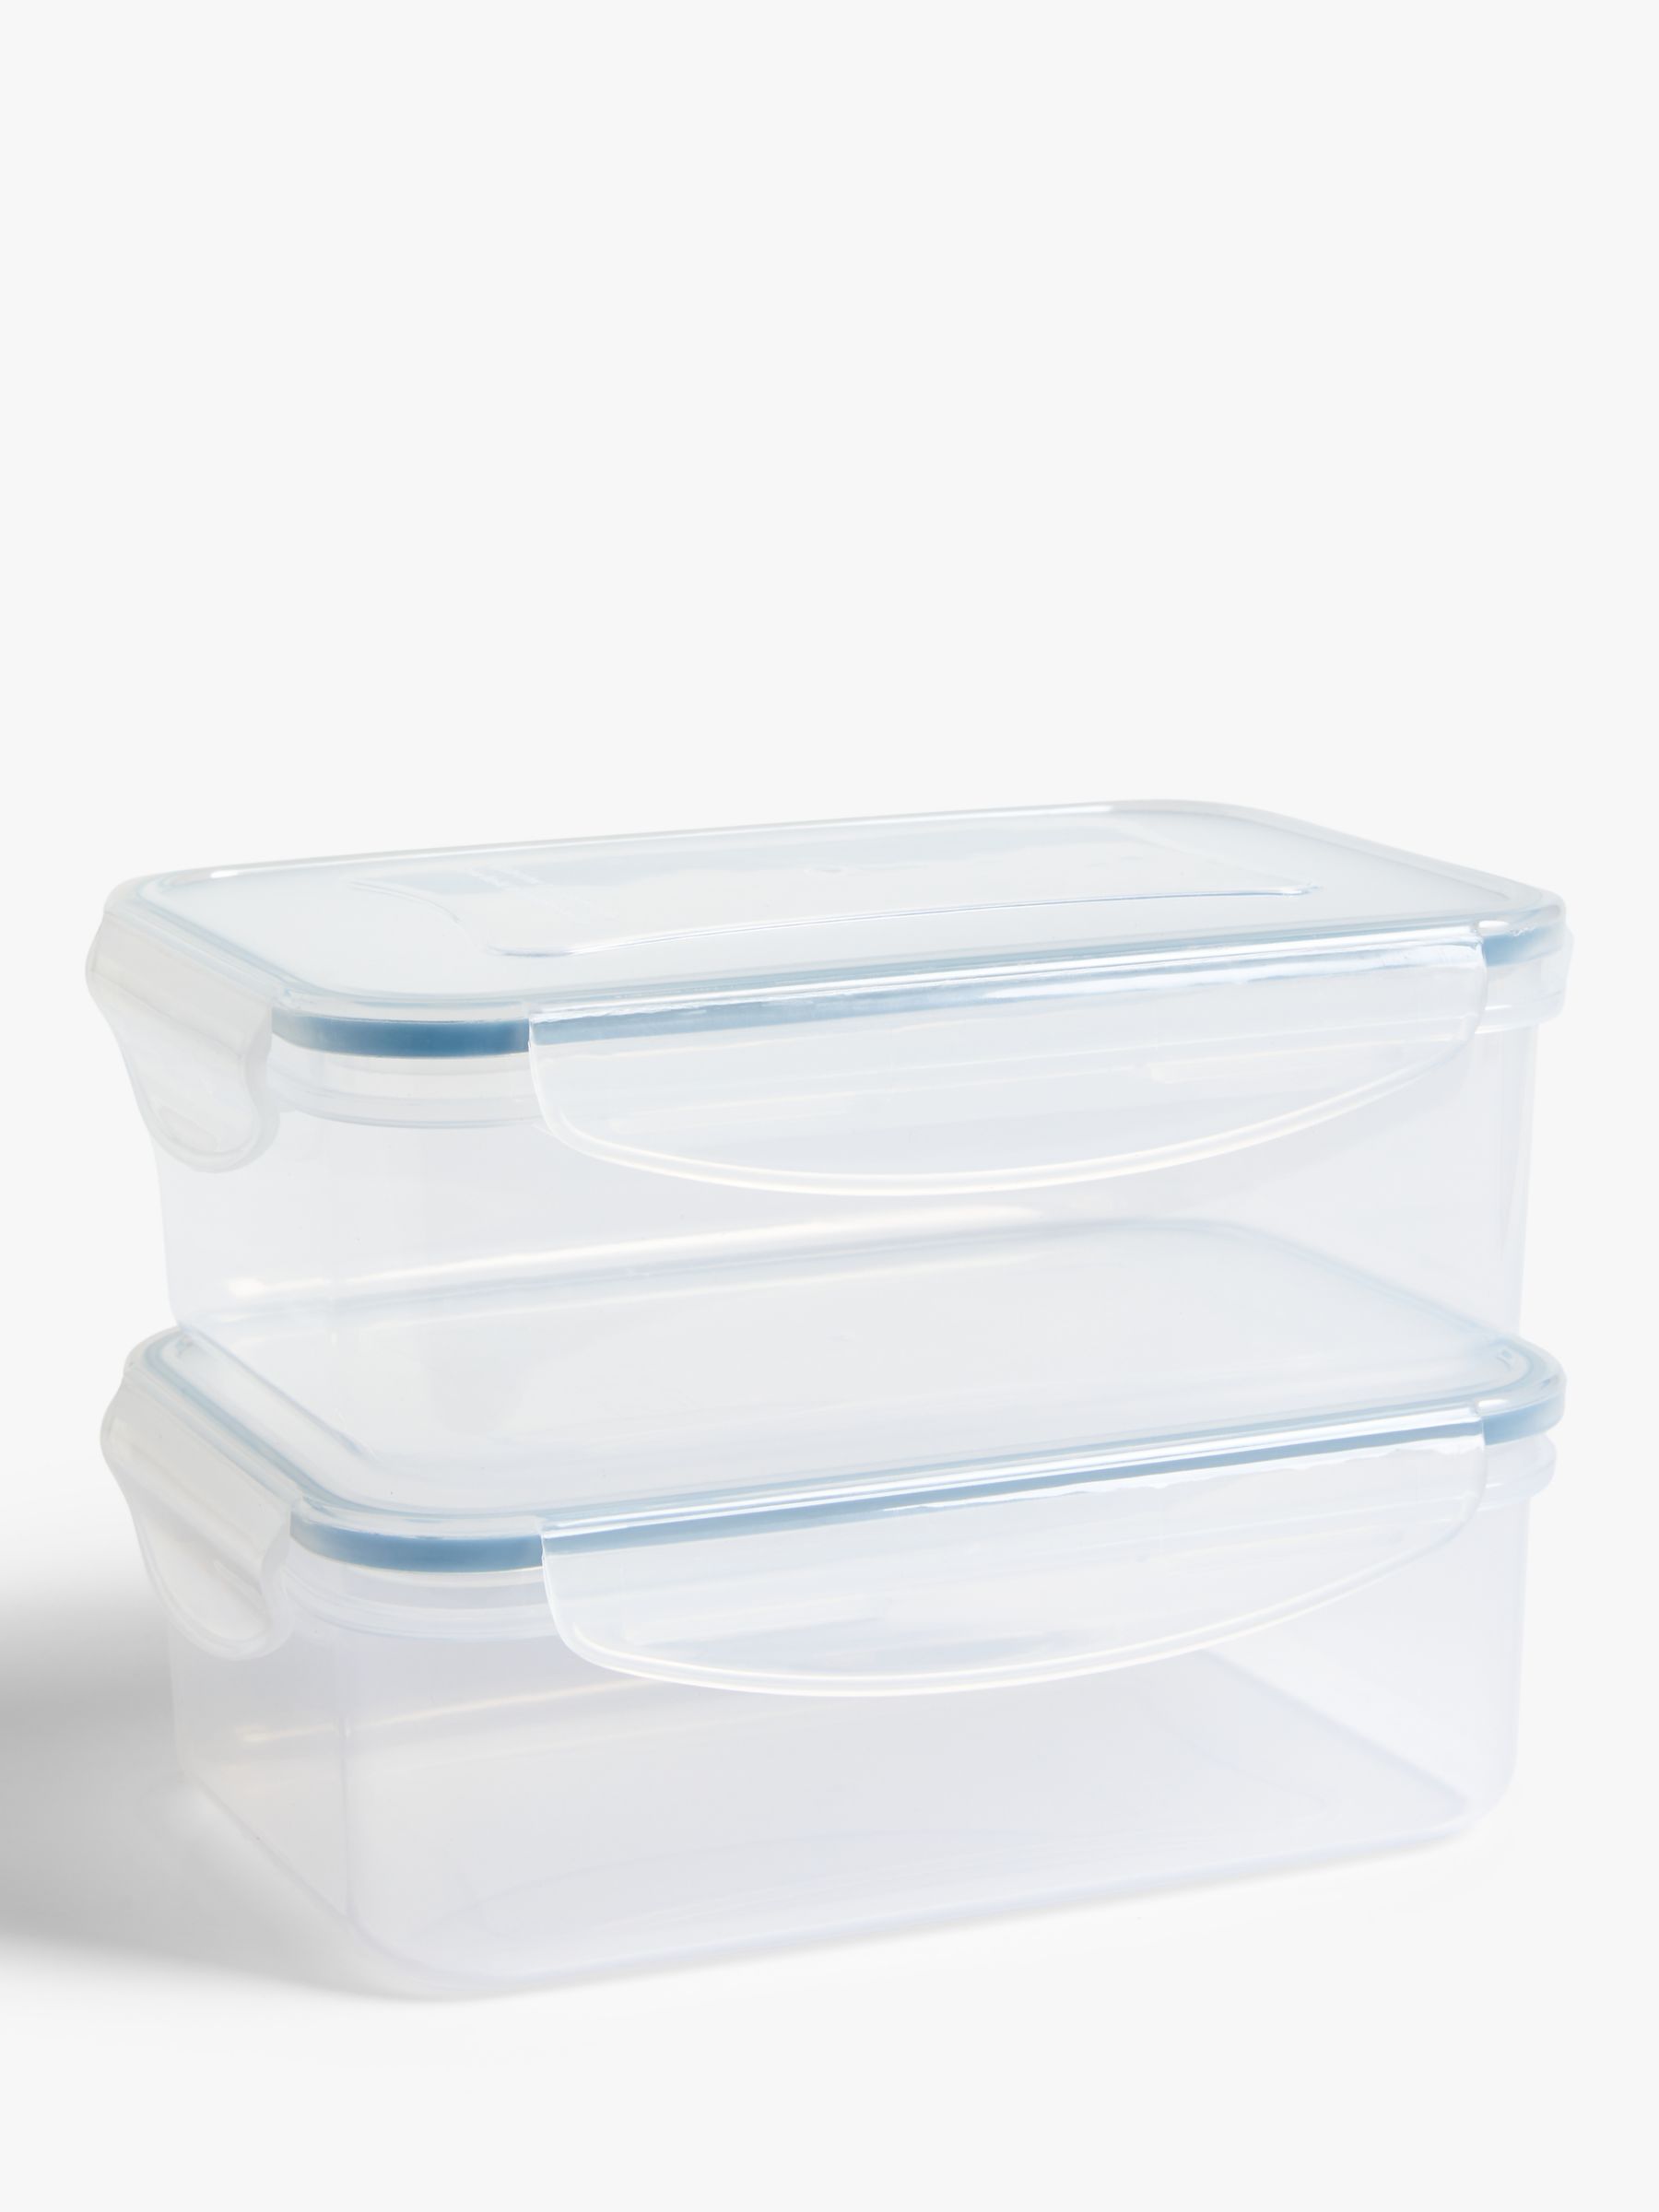 Mepal EasyClip Plastic Storage Boxes, 5 Sizes, 2 Colors